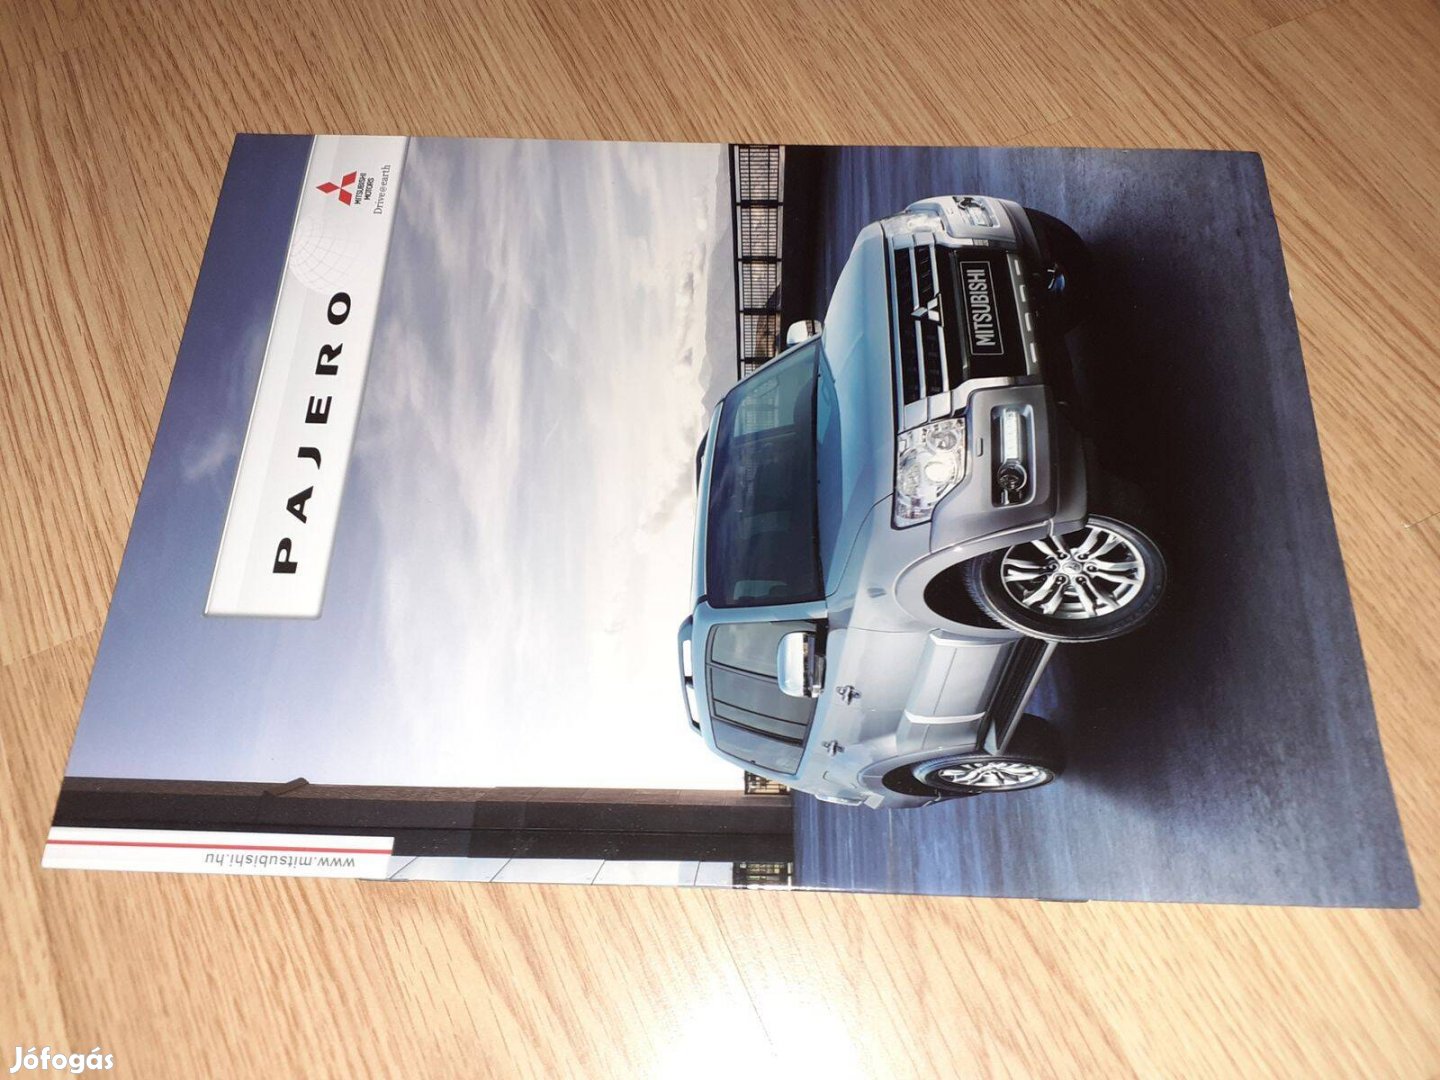 Mitsubishi Pajero (2015 facelift) prospektus - magyar nyelvű